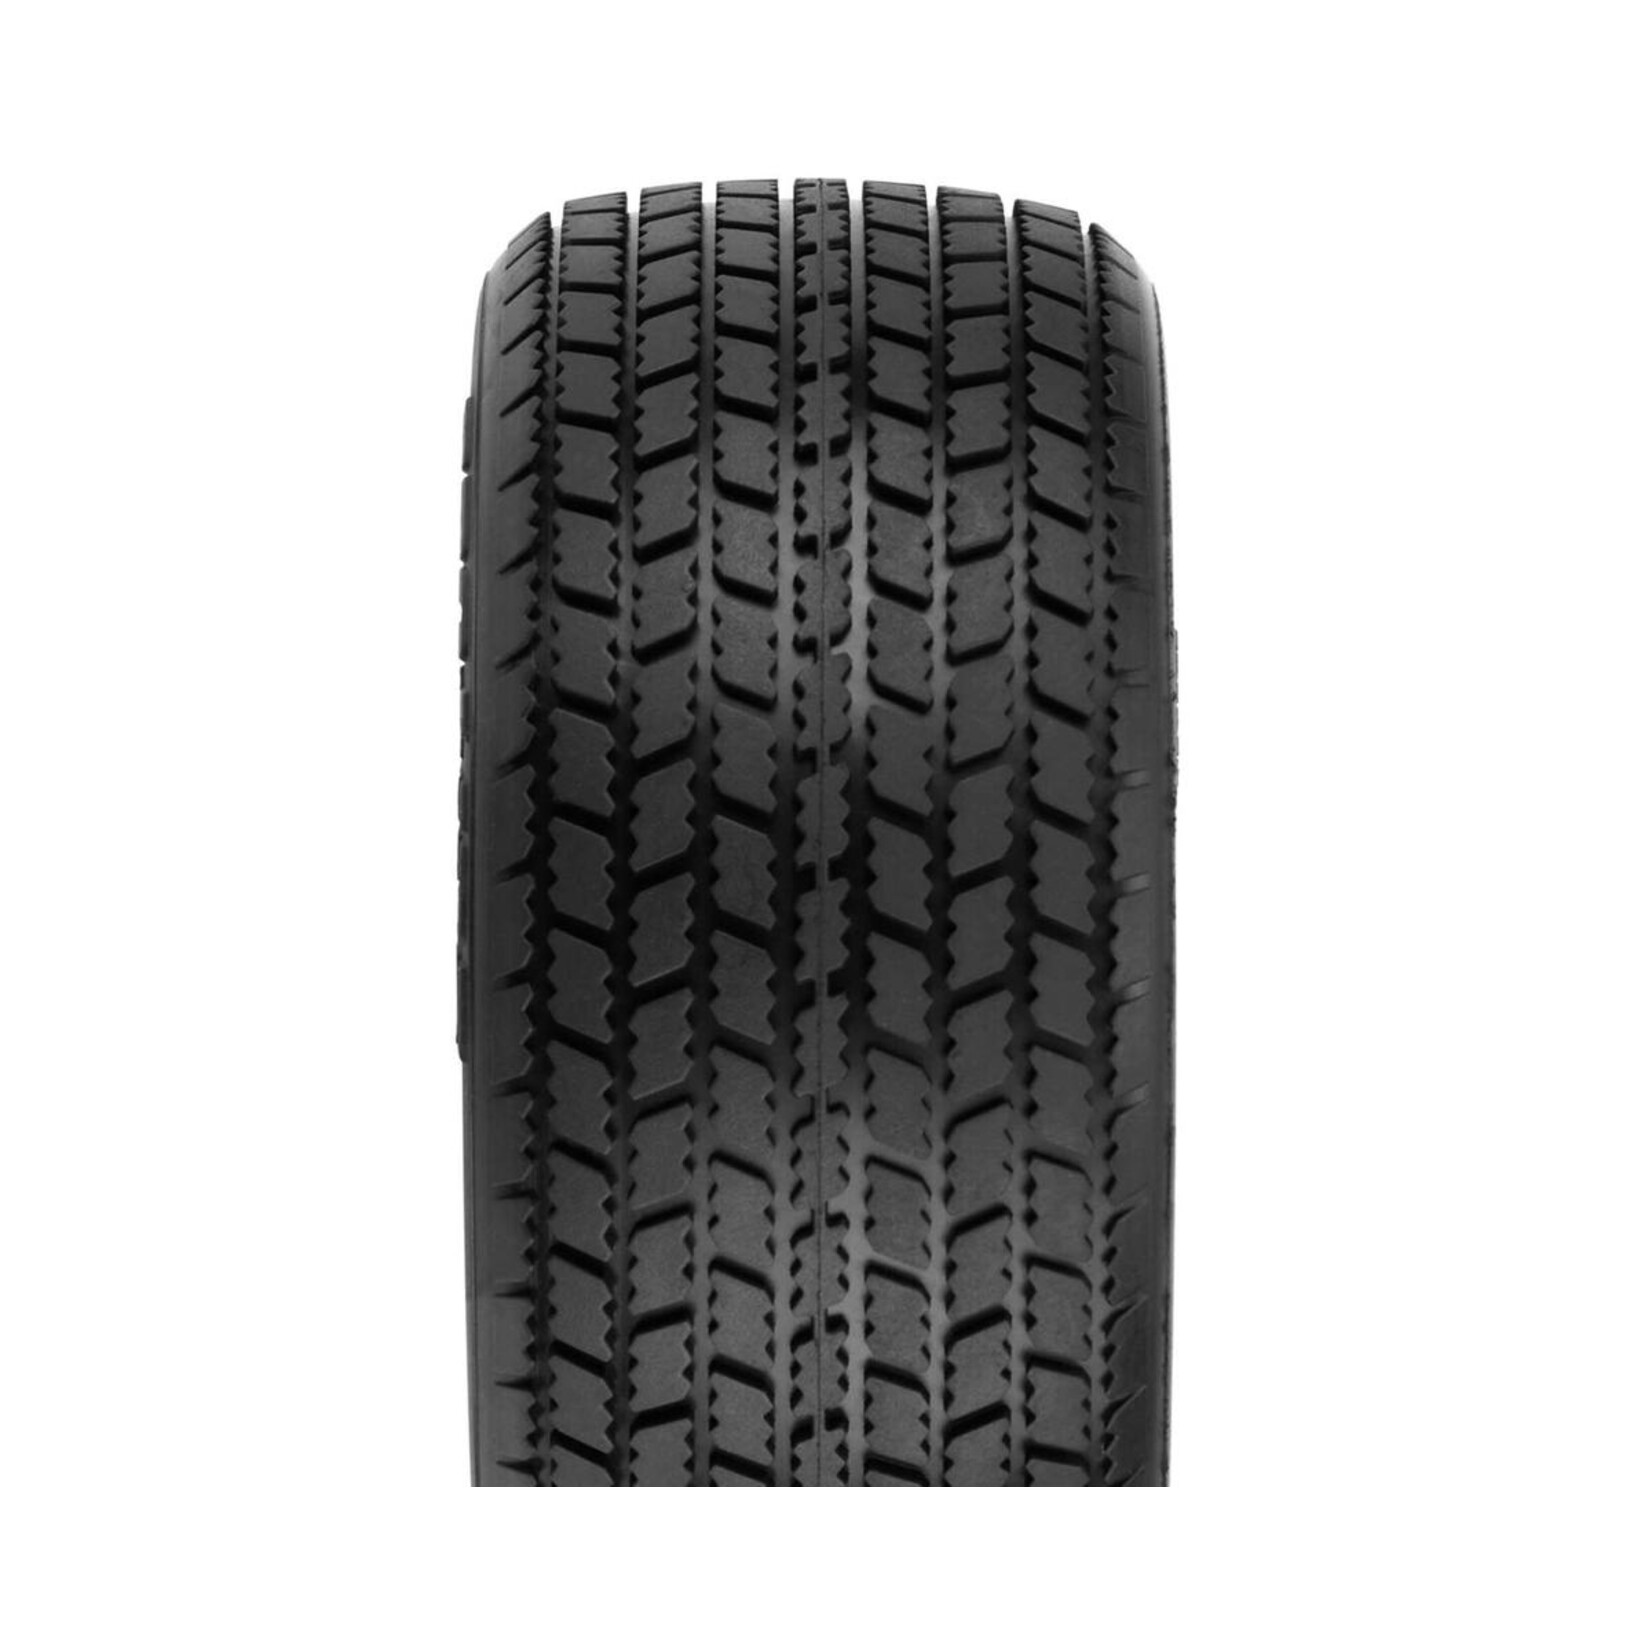 Pro-Line Pro-Line Hoosier G60 SC 2.2/3.0" Dirt Oval SC Mod Tires (2) (M3) #10153-02